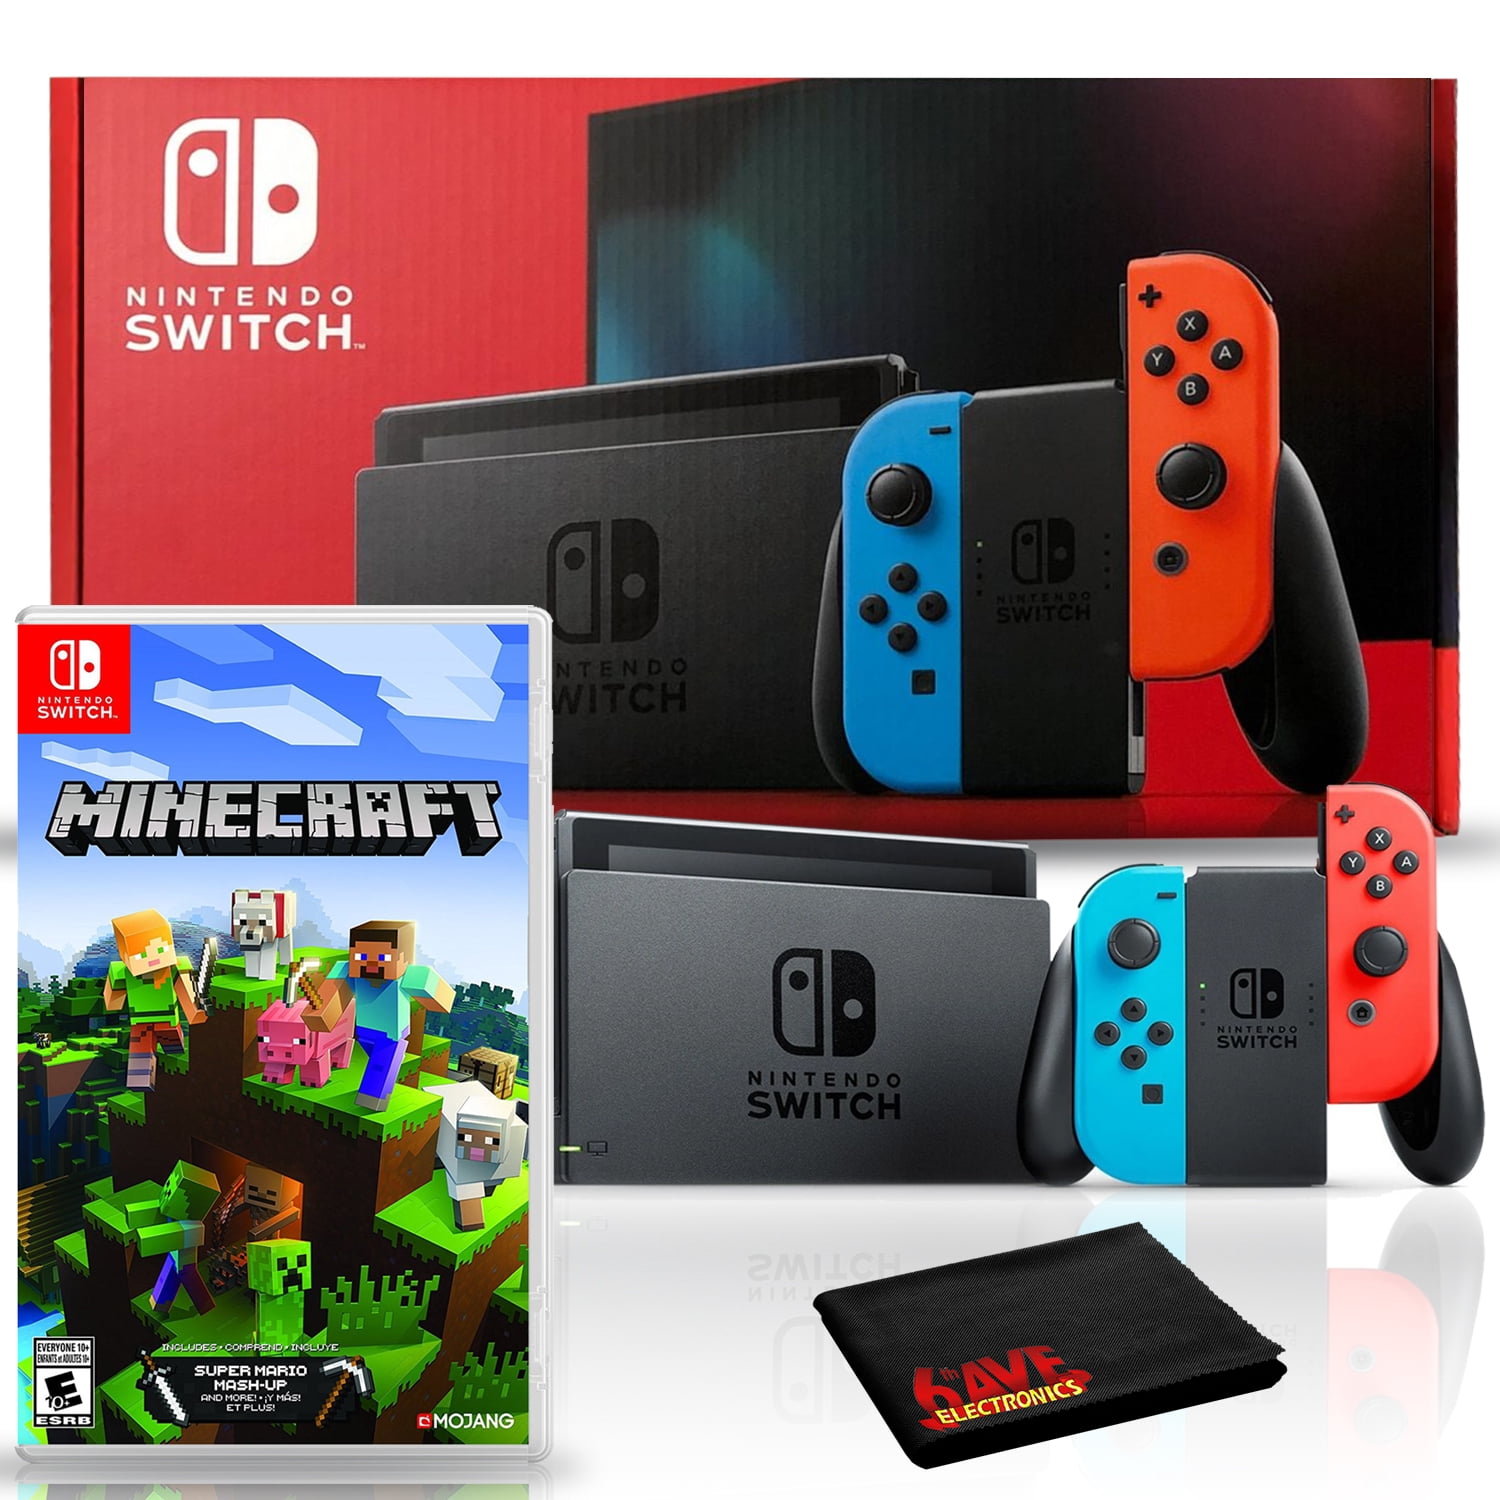 Pack console Nintendo Switch + Nintendo Switch Sports + Minecraft (via 30€  sur la carte fidélité) –